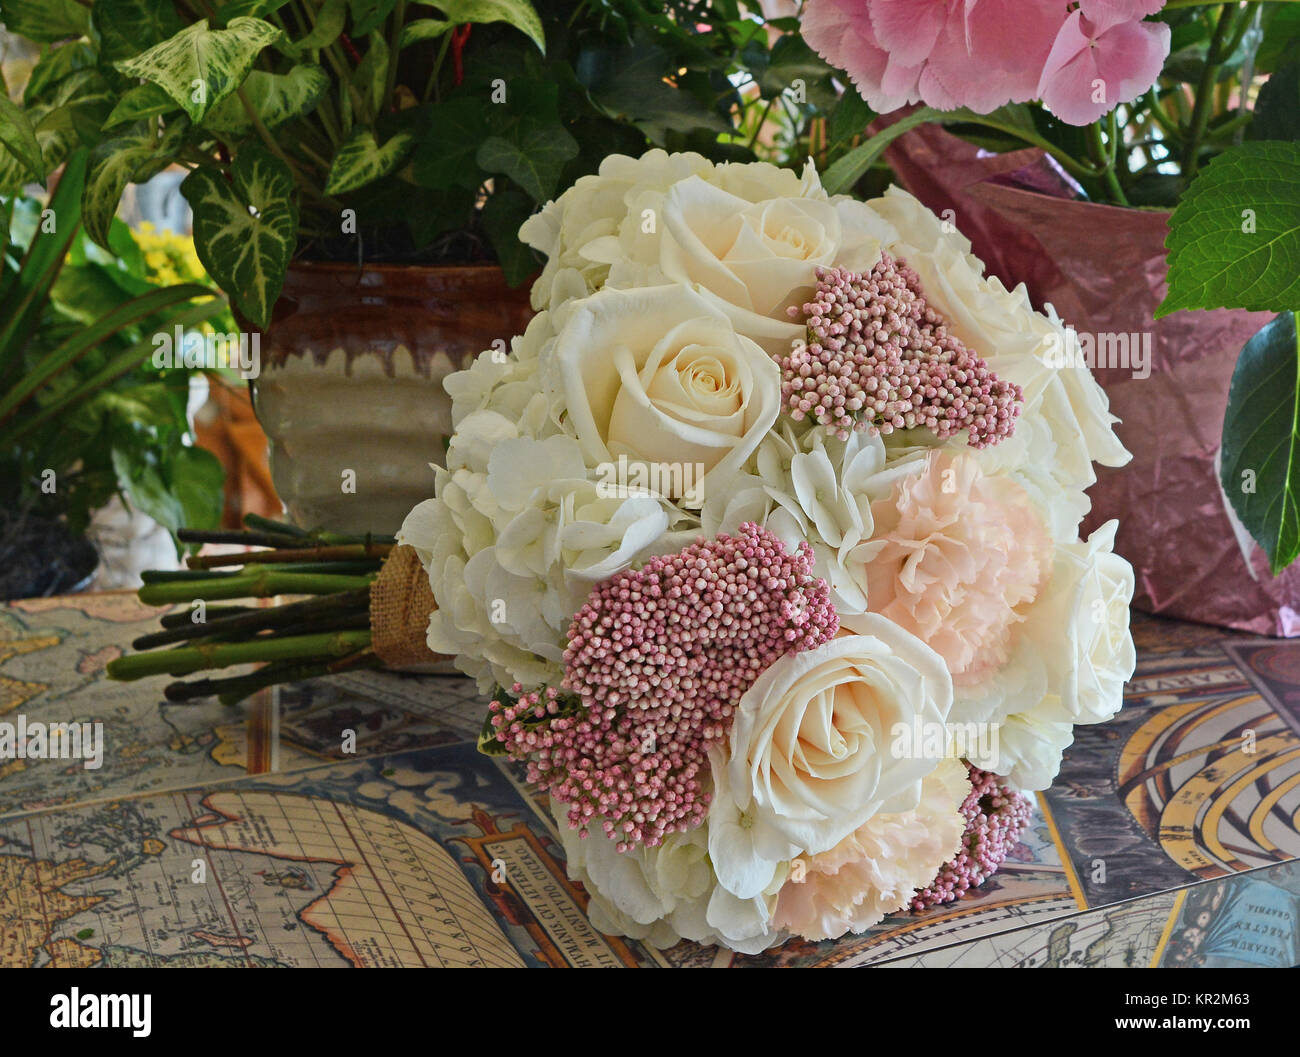 Foto von einem sanften Pastelltönen nosegay Brautstrauß mit weißen Rosen,  Hortensien, Erröten, Nelken und rosa Reis Blumen. Schön für einen Garten  Hochzeit! Stockfotografie - Alamy